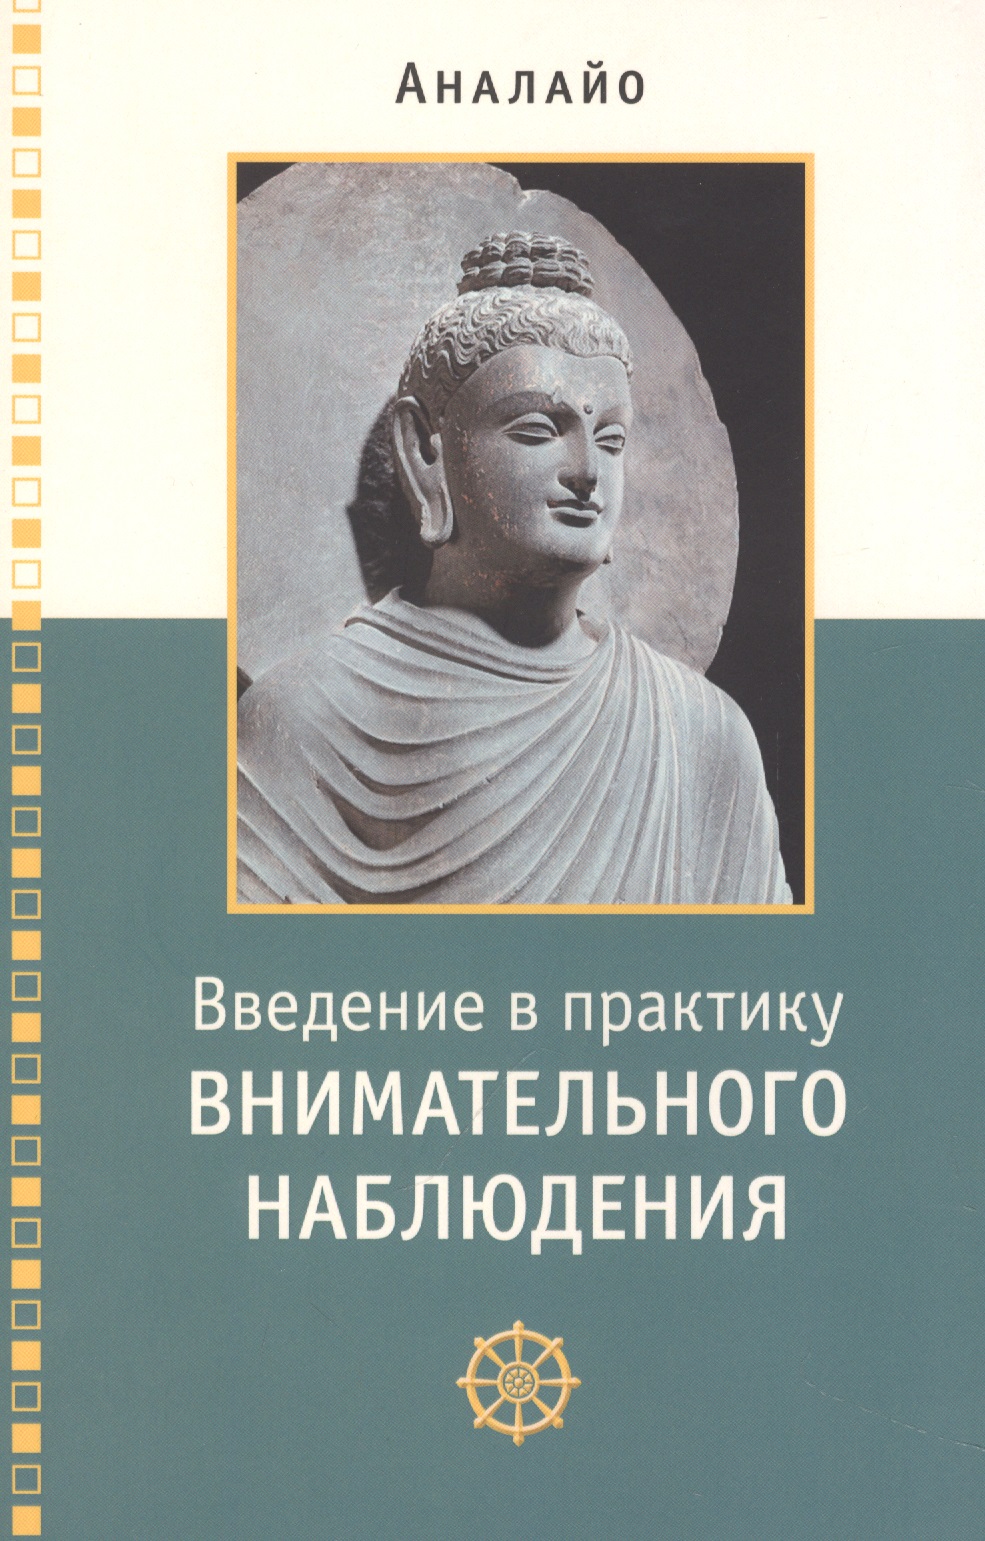 Аналайо Бхиккху Введение в практику внимательного наблюдения Буддийское обоснование и практические занятия аналайо бхиккху прямой путь к реализации основы внимательности